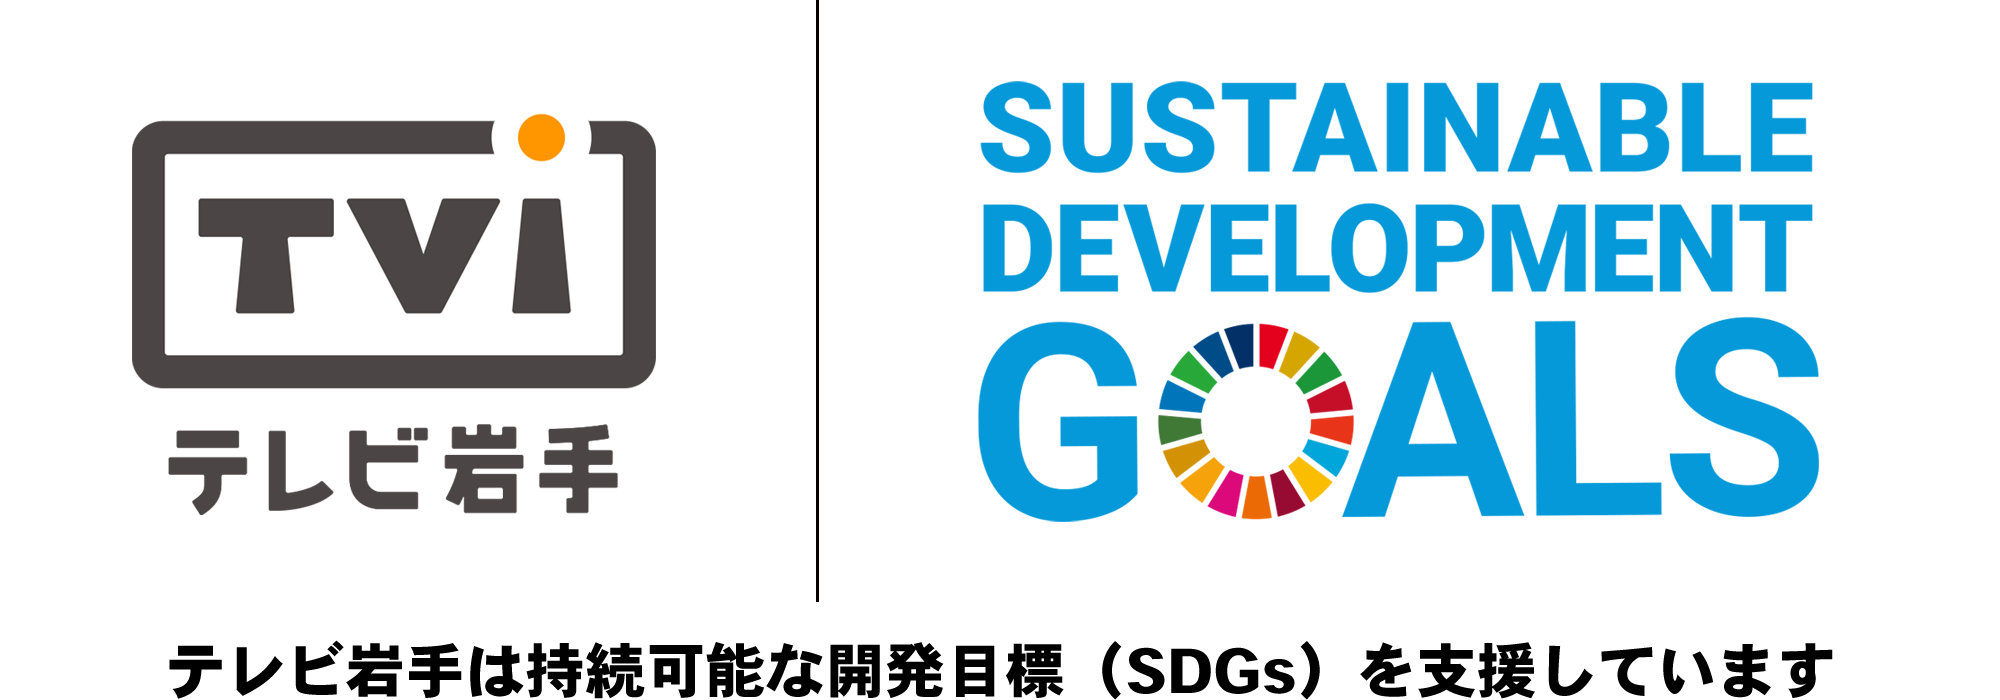 テレビ岩手は持続可能な開発目標（SDGs）を支援しています